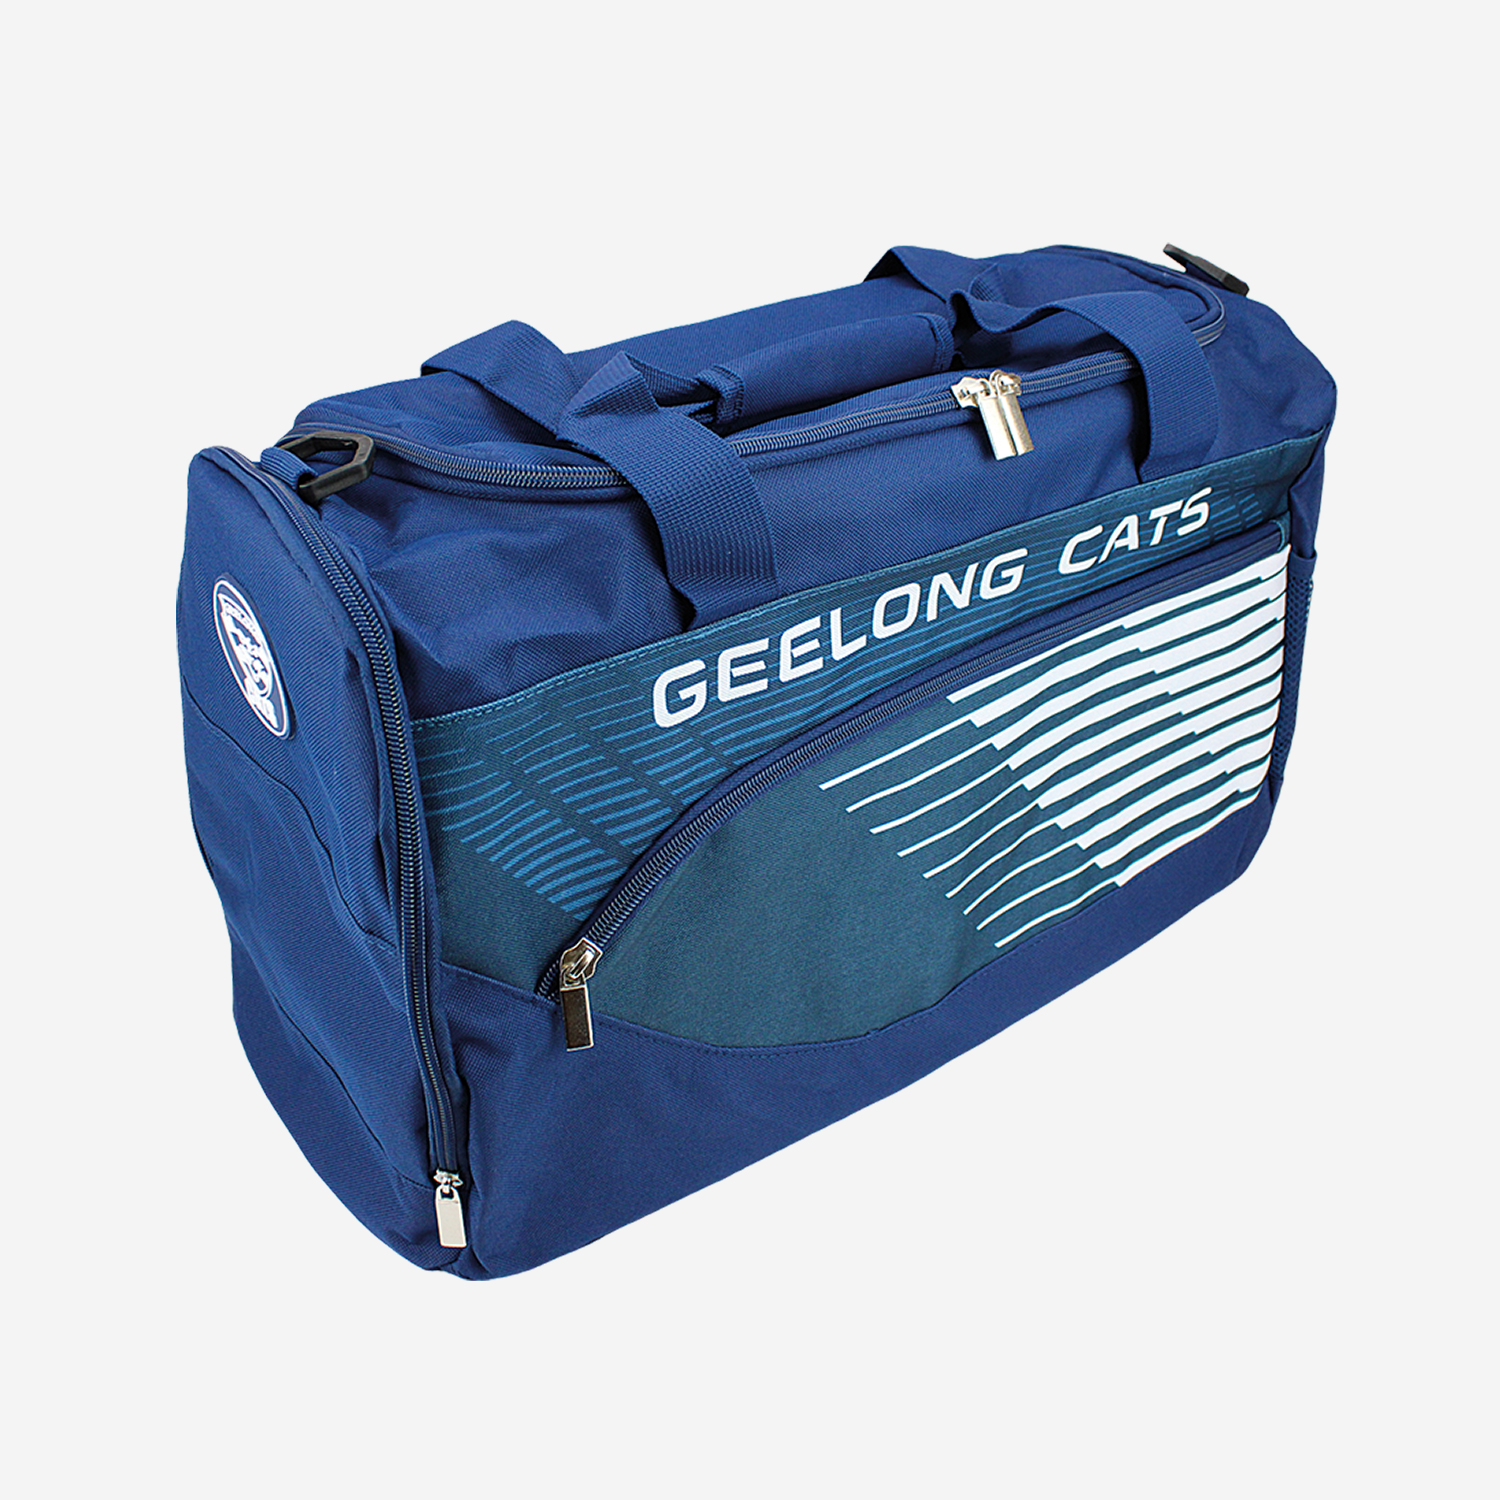 Cats Bag